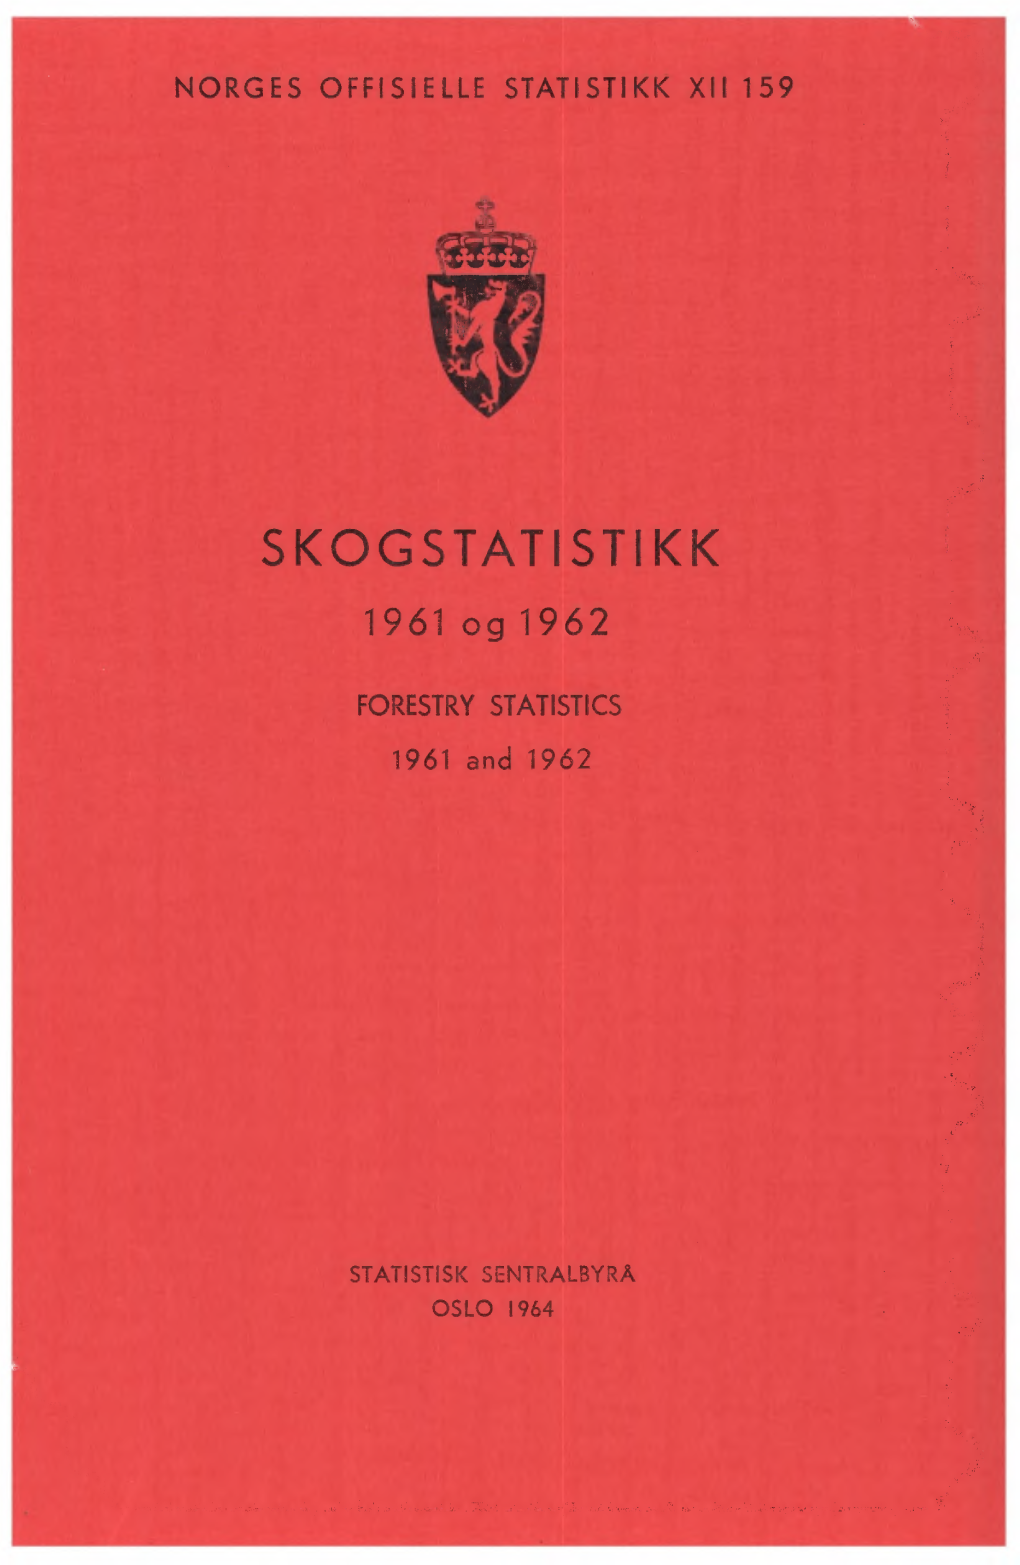 Skogstatistikk 1961 Og 1962 Forestry Statistics �O�GES O��ISIE��E S�A�IS�IKK �II �